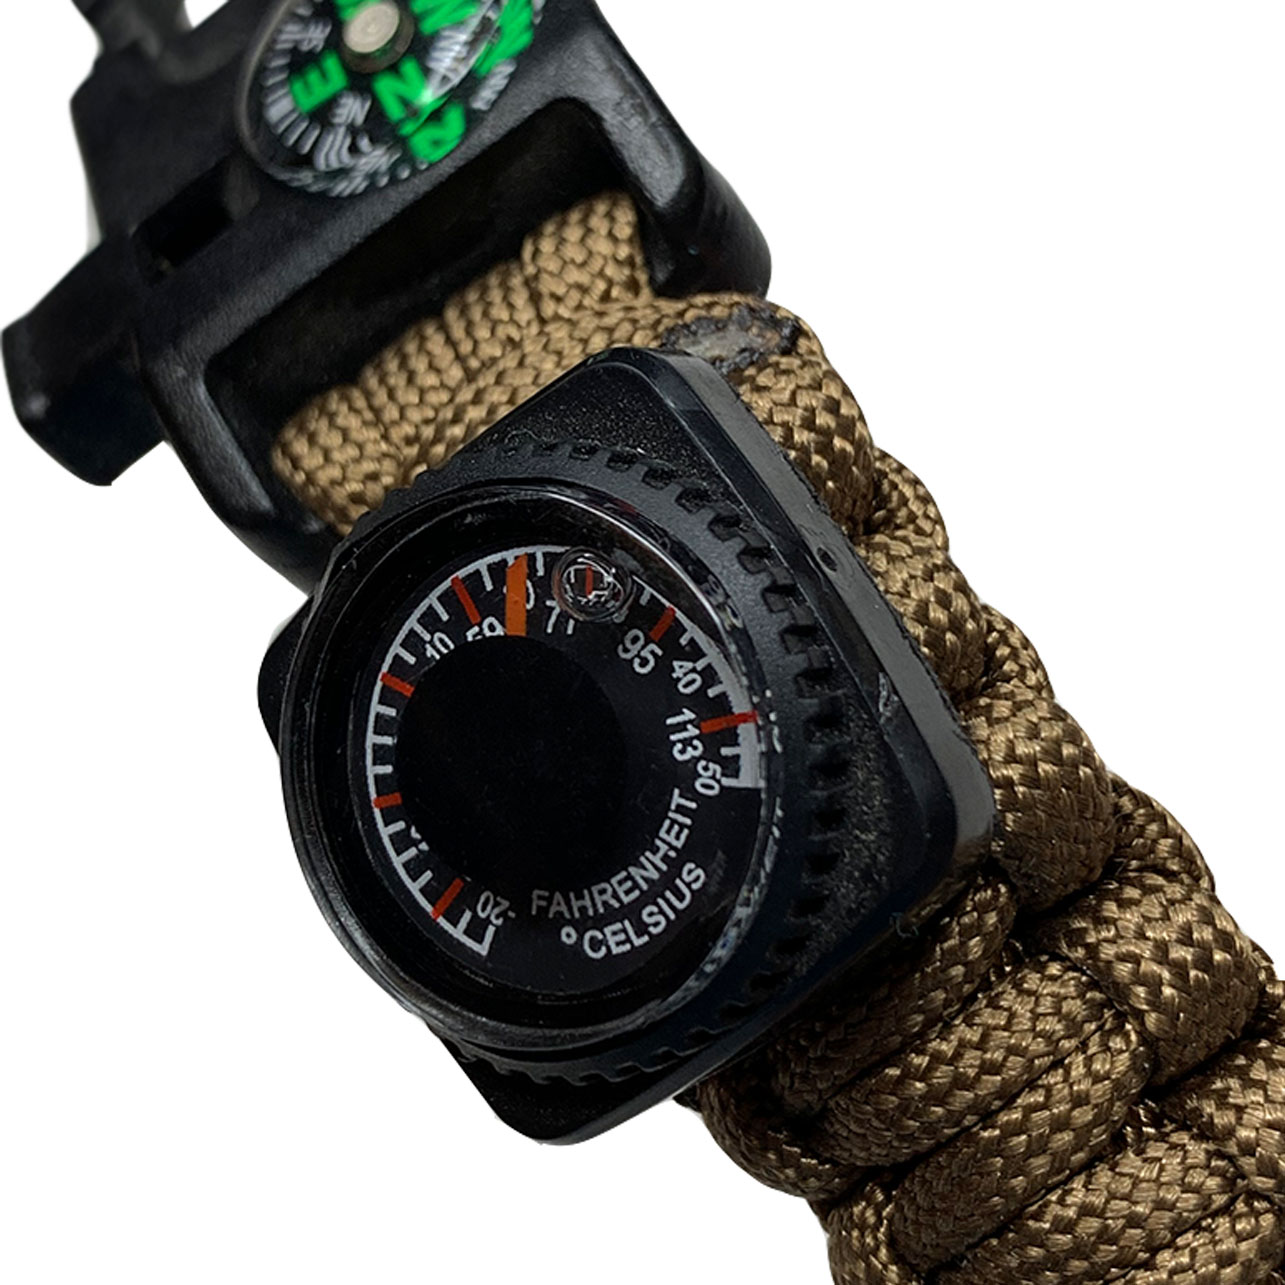 Sotwe emak. Тактические часы ЕМАК S-431. Часы для выживания с паракордовым браслетом emak s-431. Часы наручные emak тактические. Часы тактические (компас, огниво, паракорд).